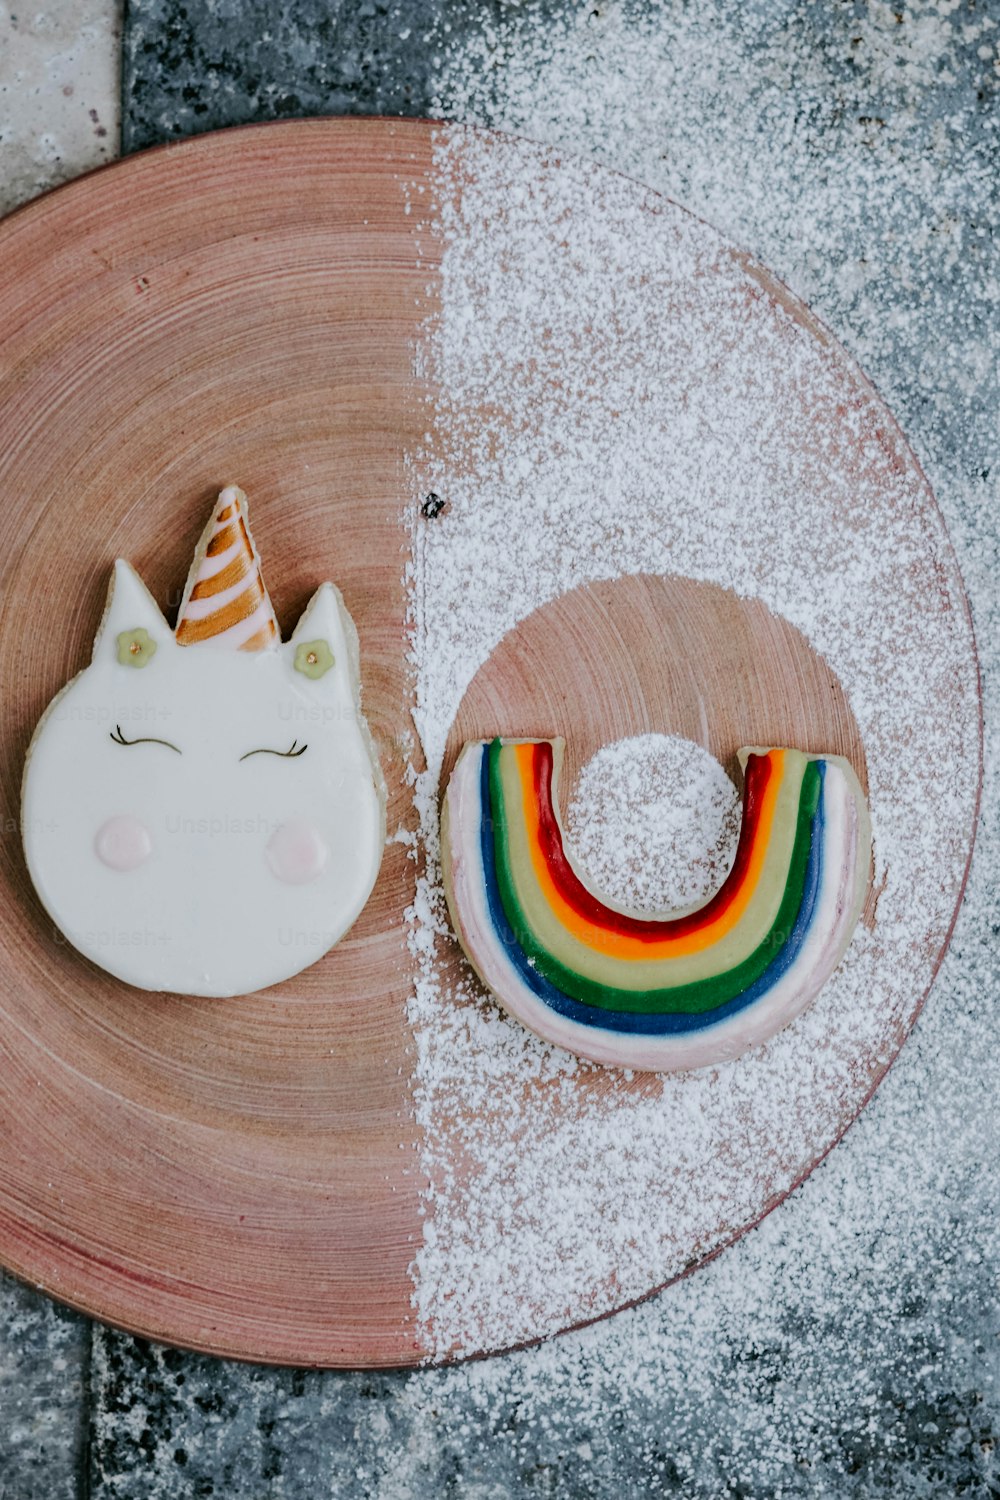 Un plato con una galleta de unicornio y una galleta de arco iris